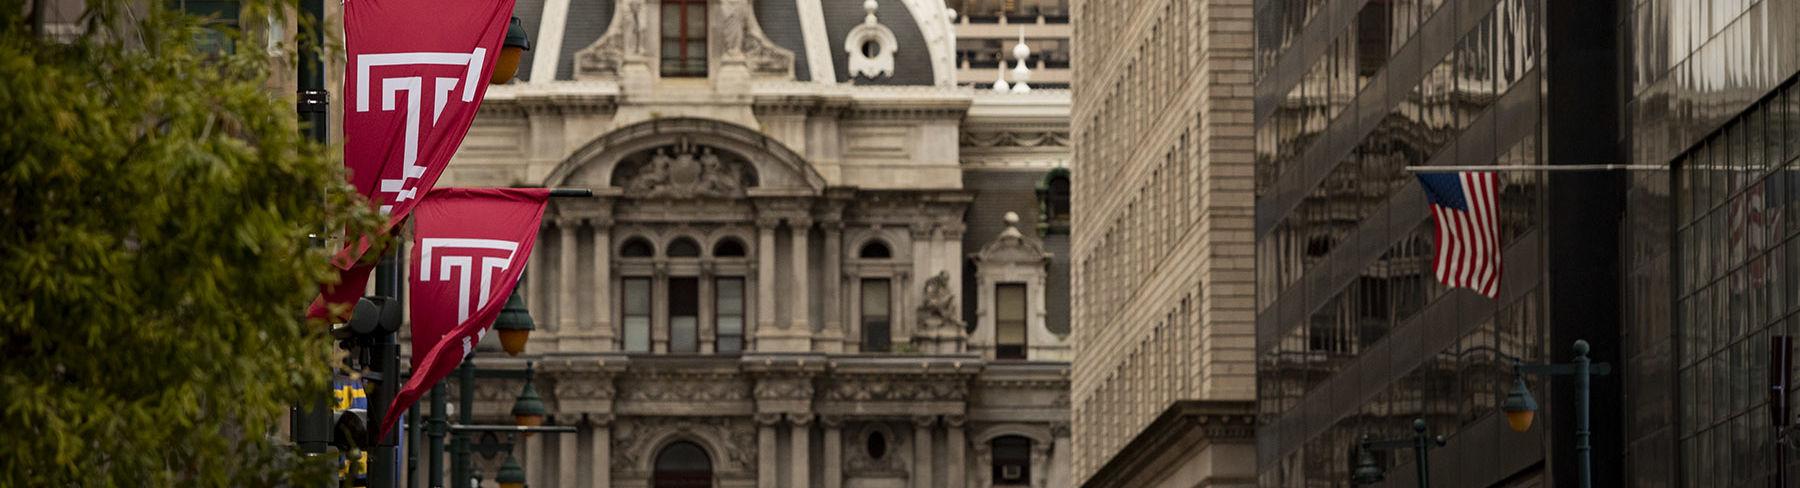 位于市场街的费城市政厅大楼两旁挂满了樱桃红色的威尼斯人赌场网站T旗